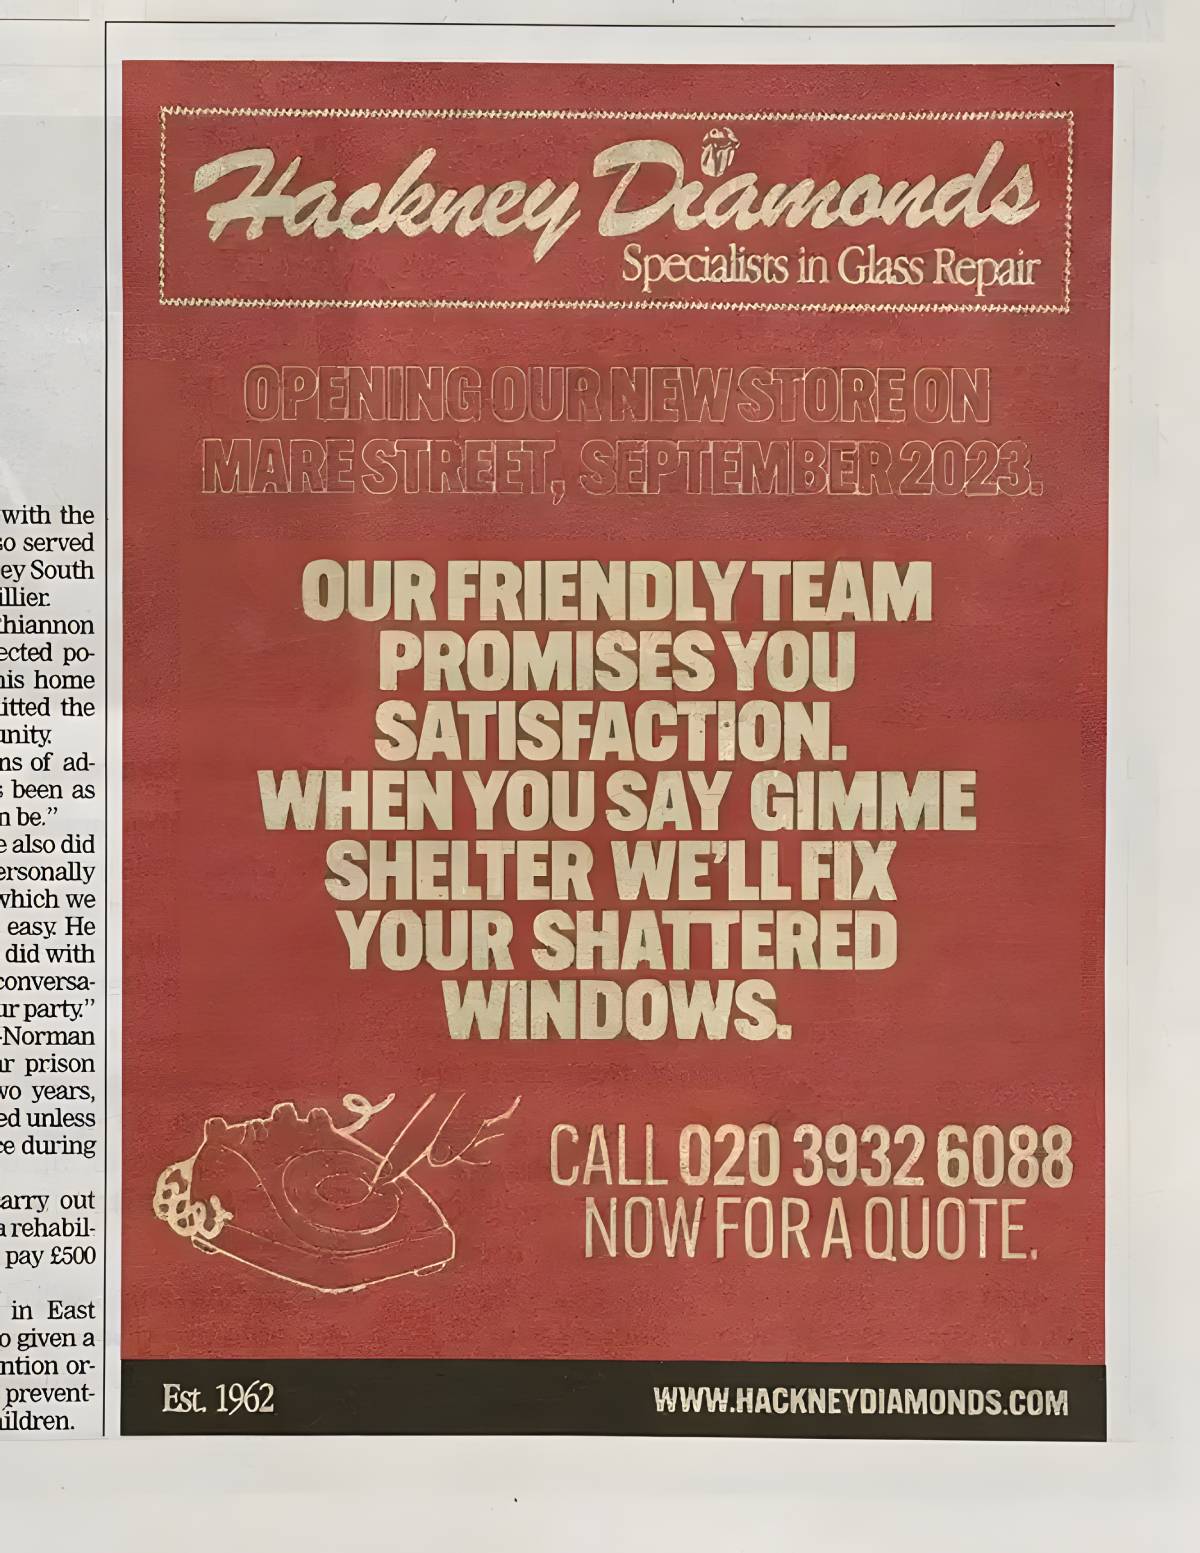 Campaña publicitaria de Hackney Diamonds